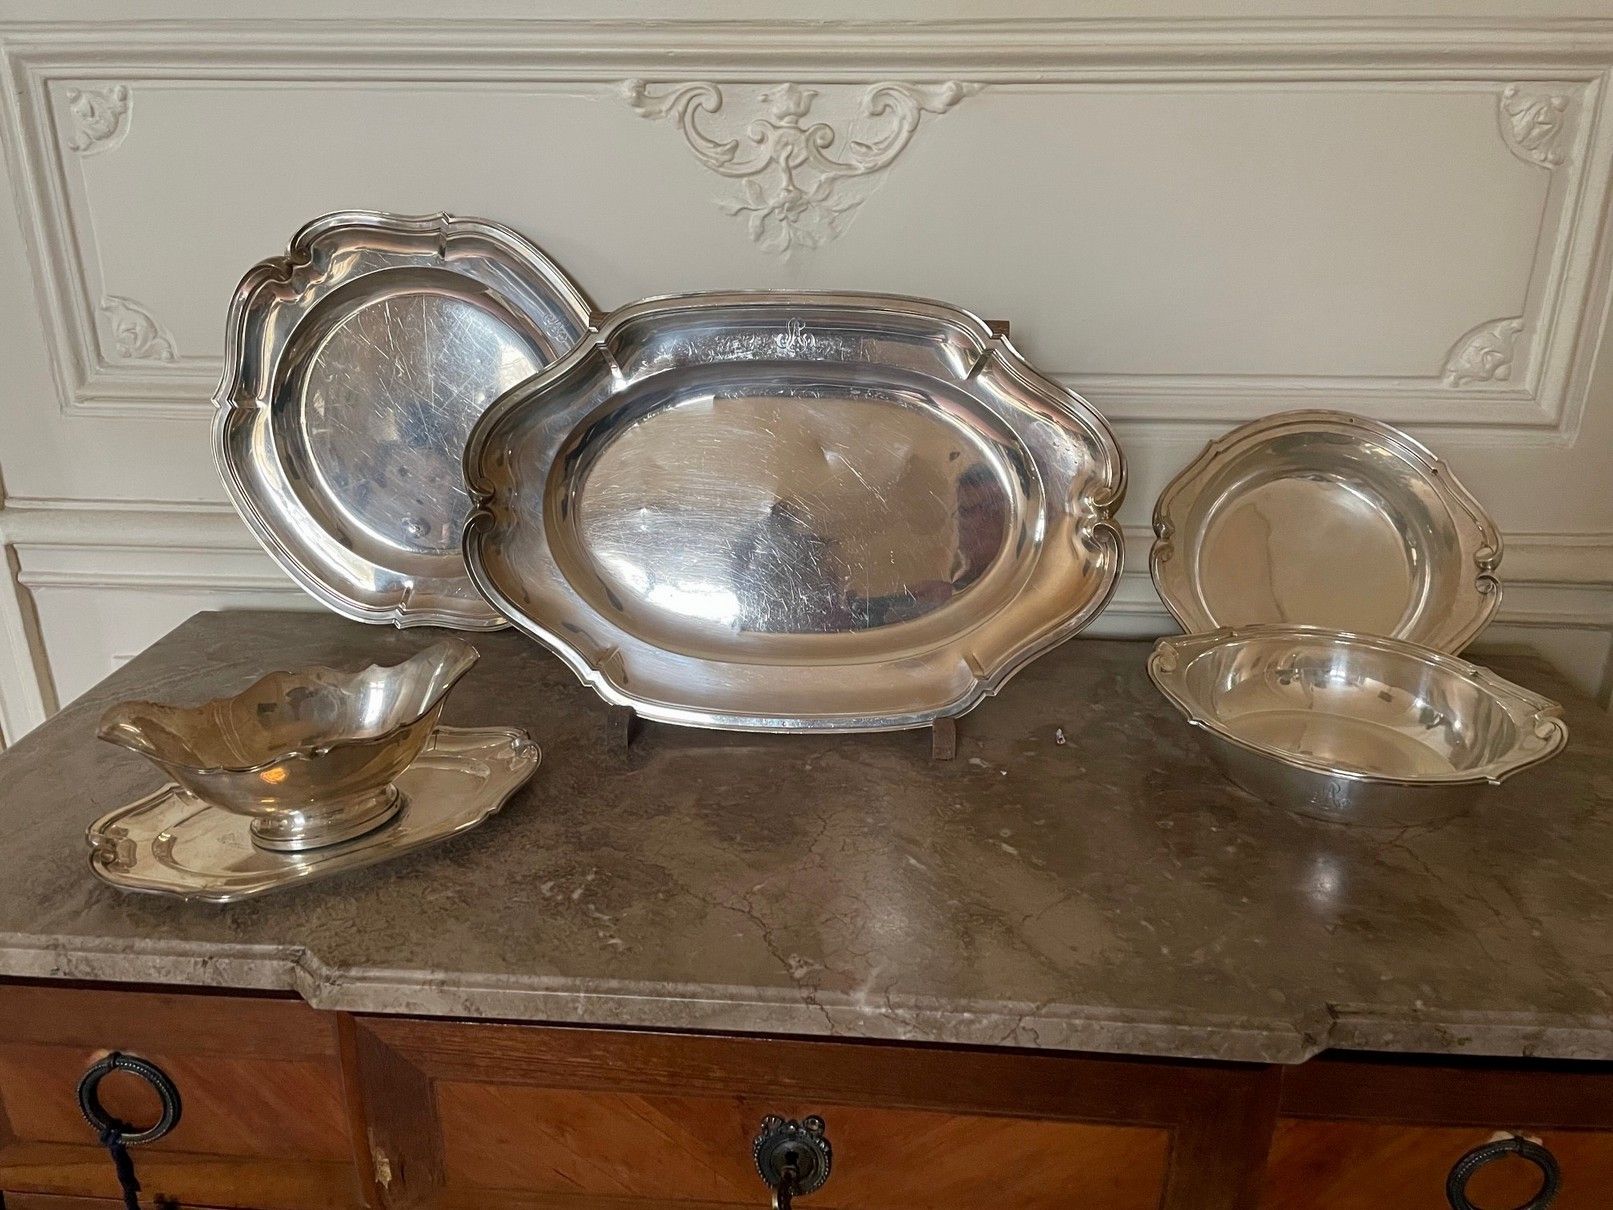 Null 套装包括 :一个圆盘，一个椭圆盘，一对碗，一个带银质展示架的酱缸，锉刀和轮廓模型。